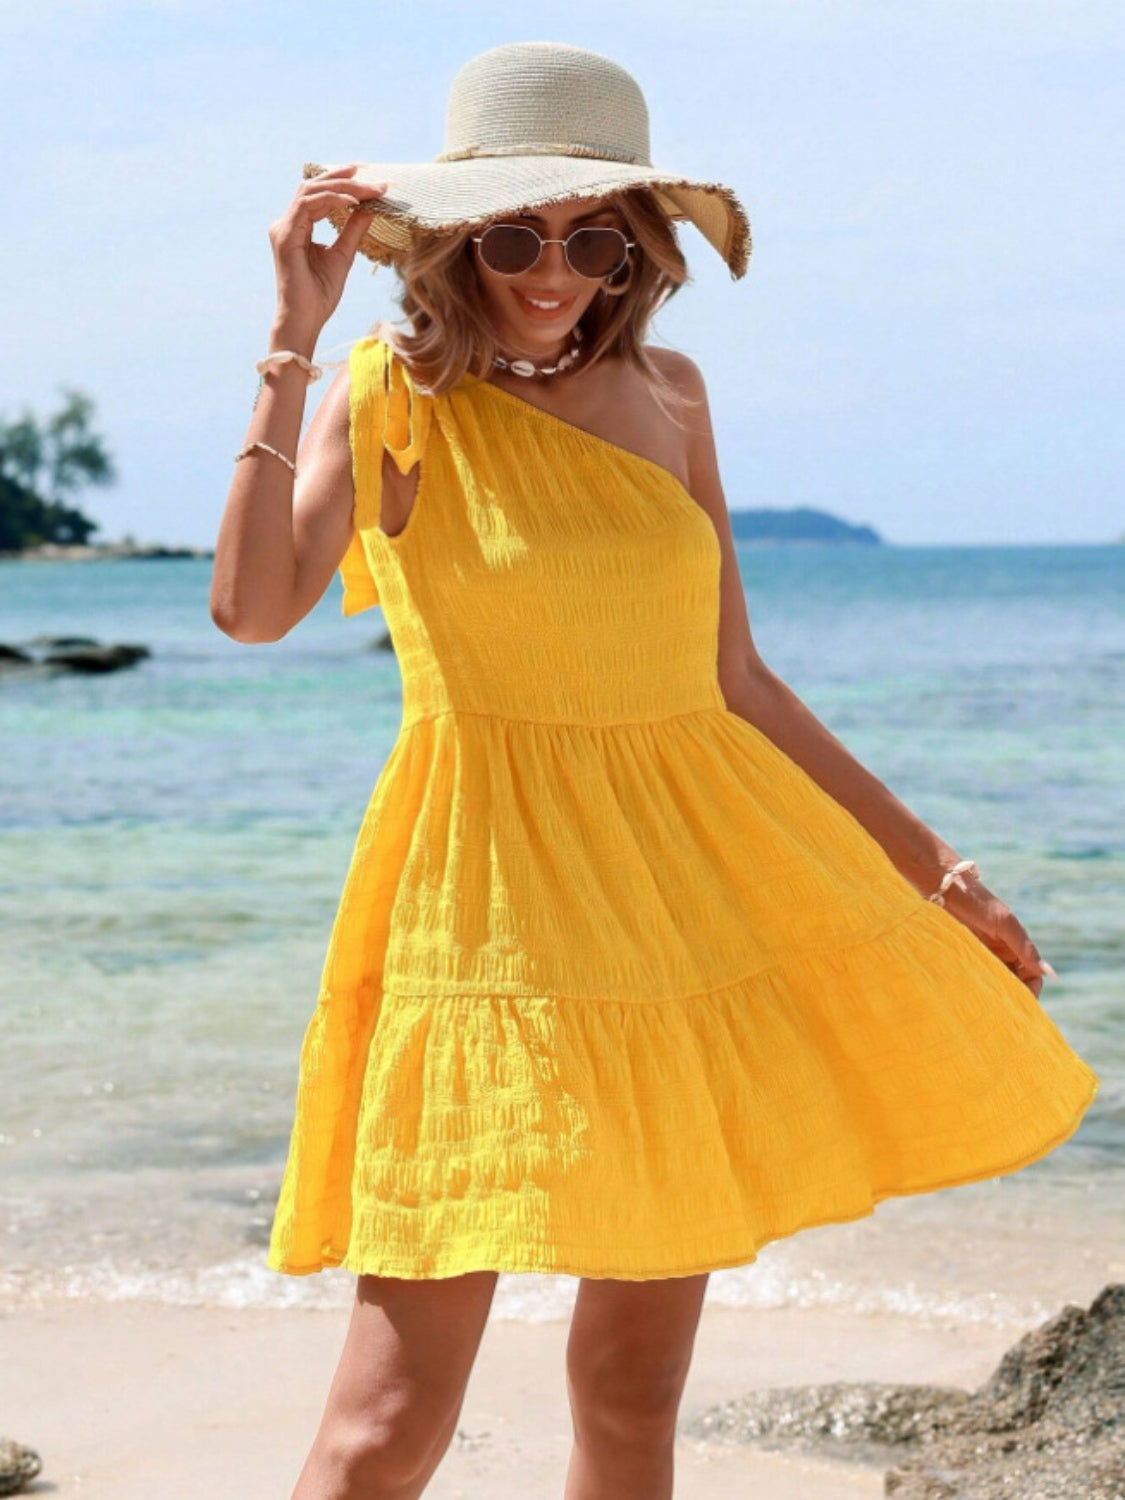 TEEK - Yellow Tied Single Shoulder Dress DRESS TEEK Trend   